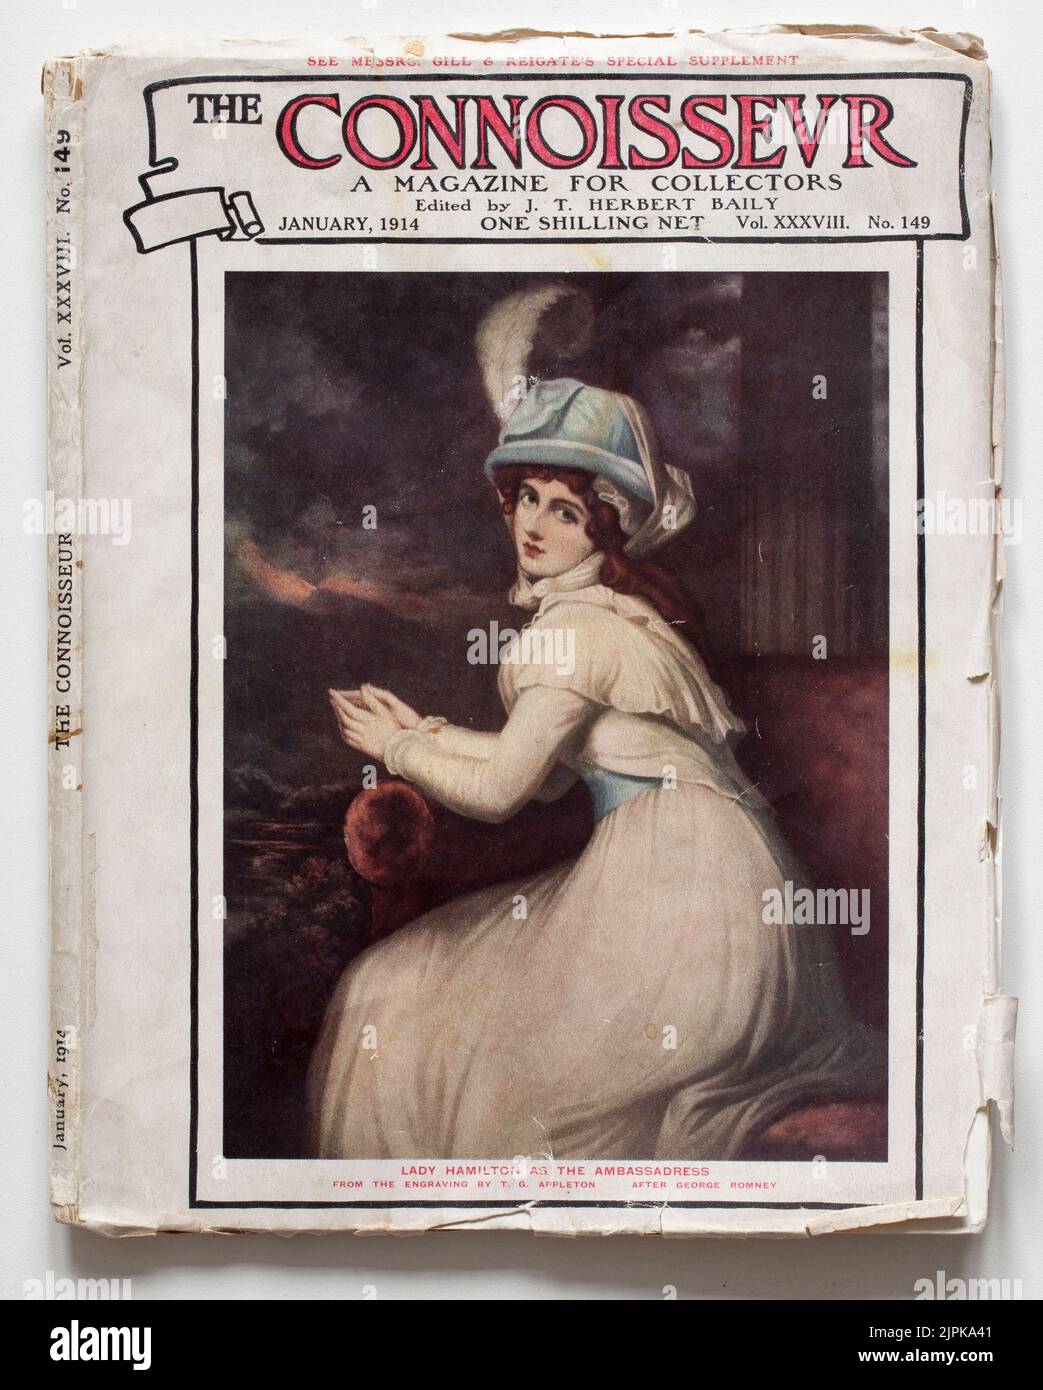 The Connoisseur Antiques Magazine gennaio 1914 con il dipinto "Lady Hamilton as the Ambassadress" in onore di George Romney sulla copertina anteriore Foto Stock